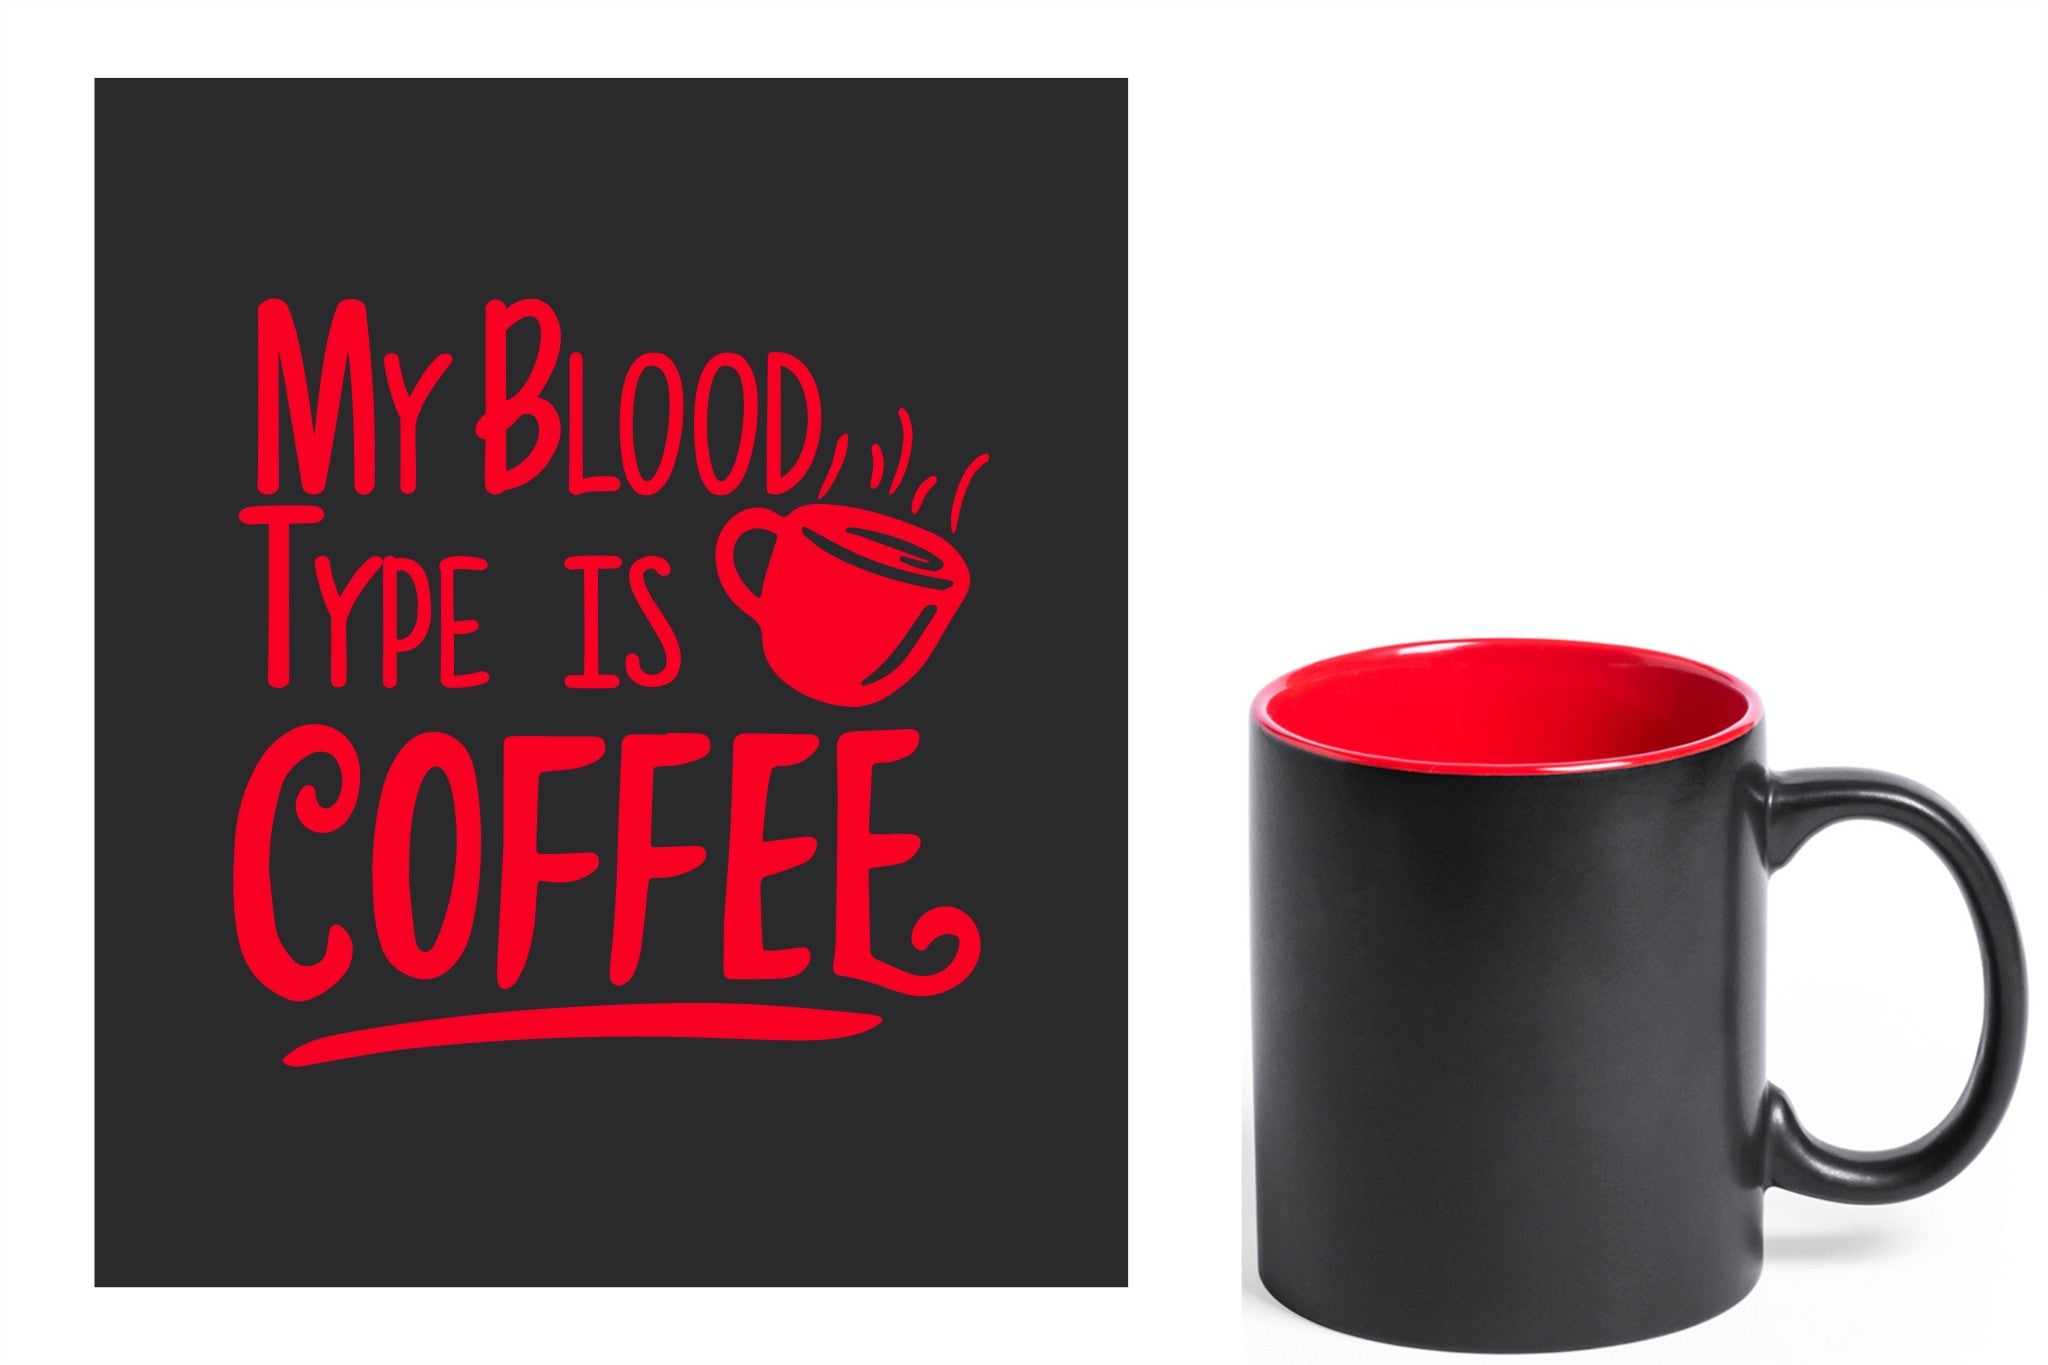 zwarte keramische mok met rode gravure  'My blood type is coffee'.